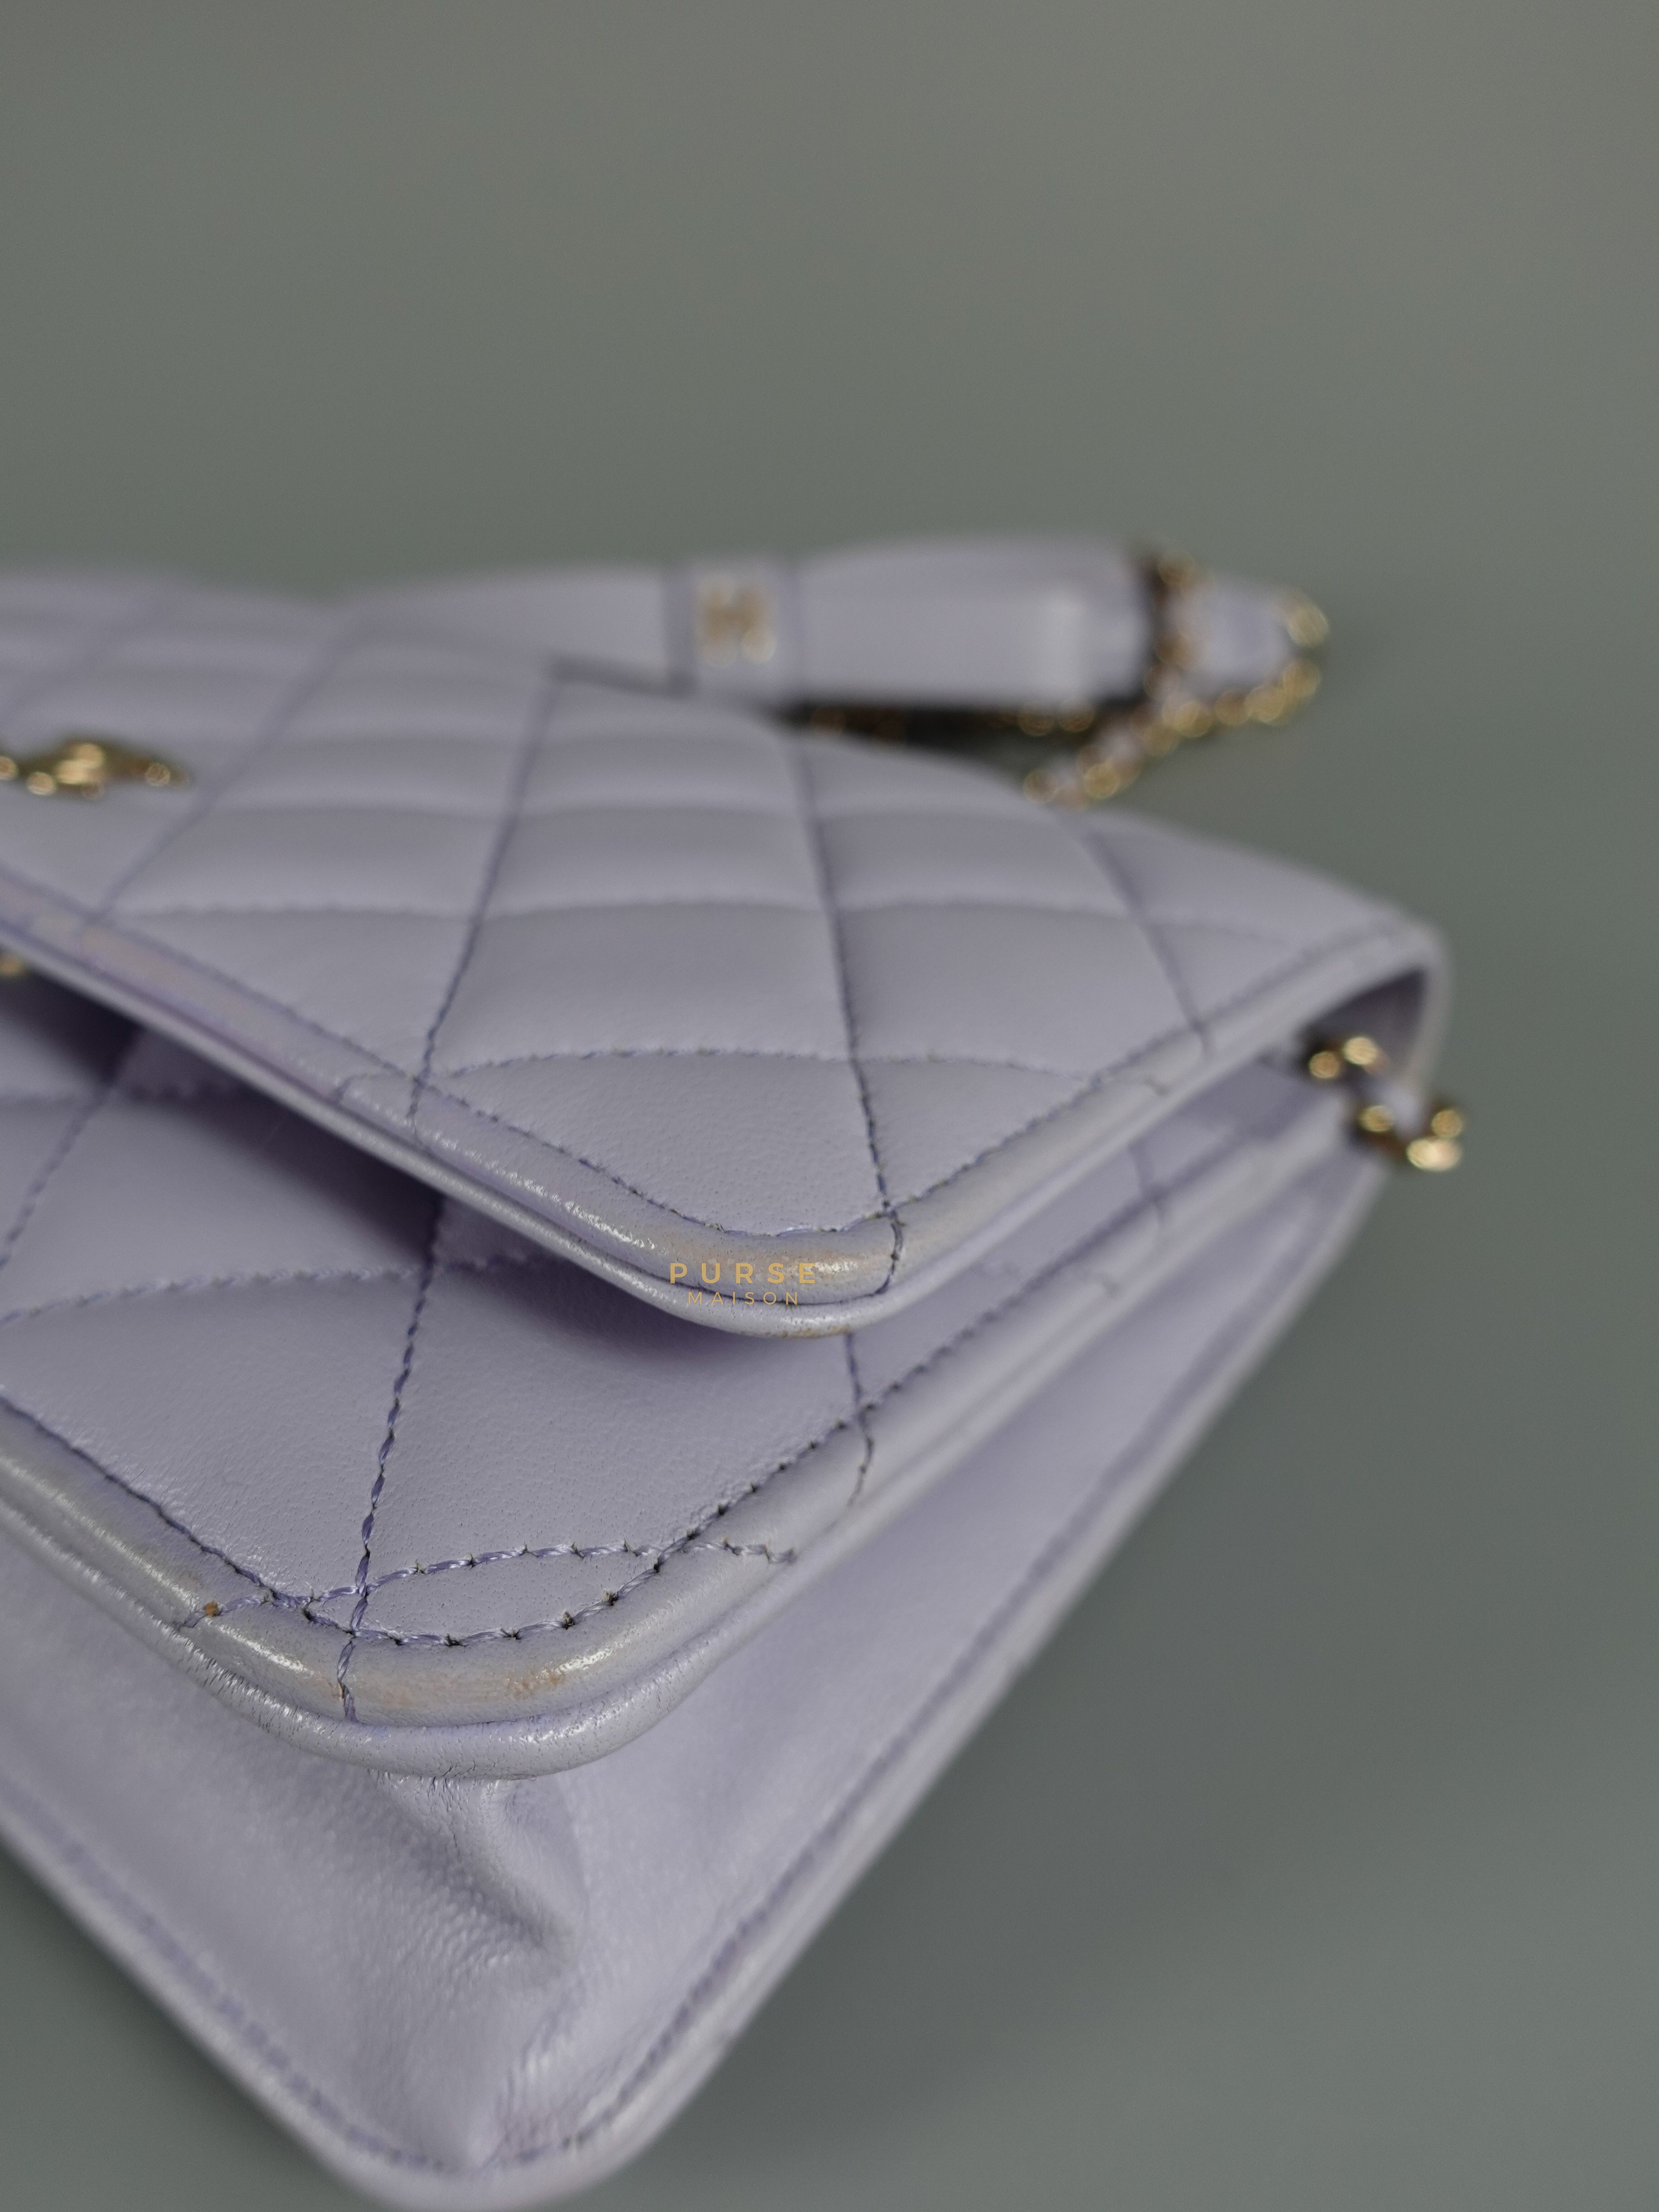 Chanel Wallet on Chain (WOC) in Light Purple Lambskin Leather Light Gold hardware (Microchip) | Purse Maison Luxury Bags Shop